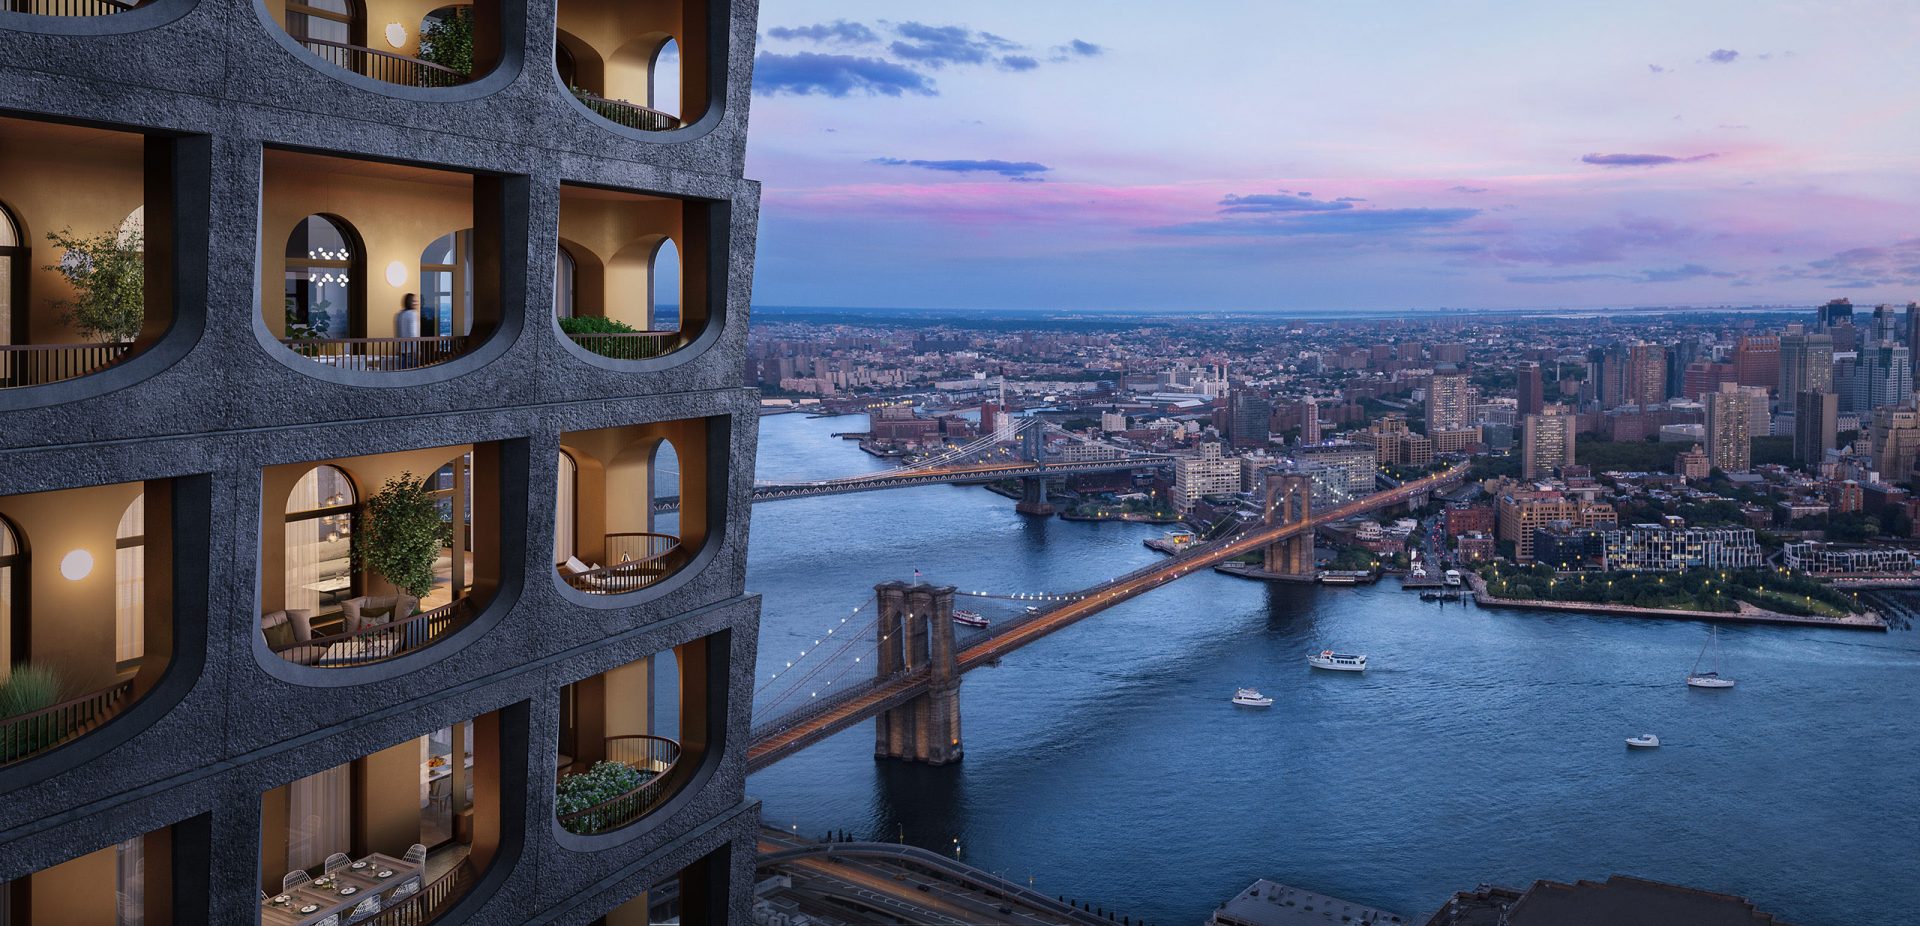 Νέα Υόρκη: Σαν «ερειπωμένο κάστρο» ο πρώτος ουρανοξύστης του Adjaye [εικόνες]